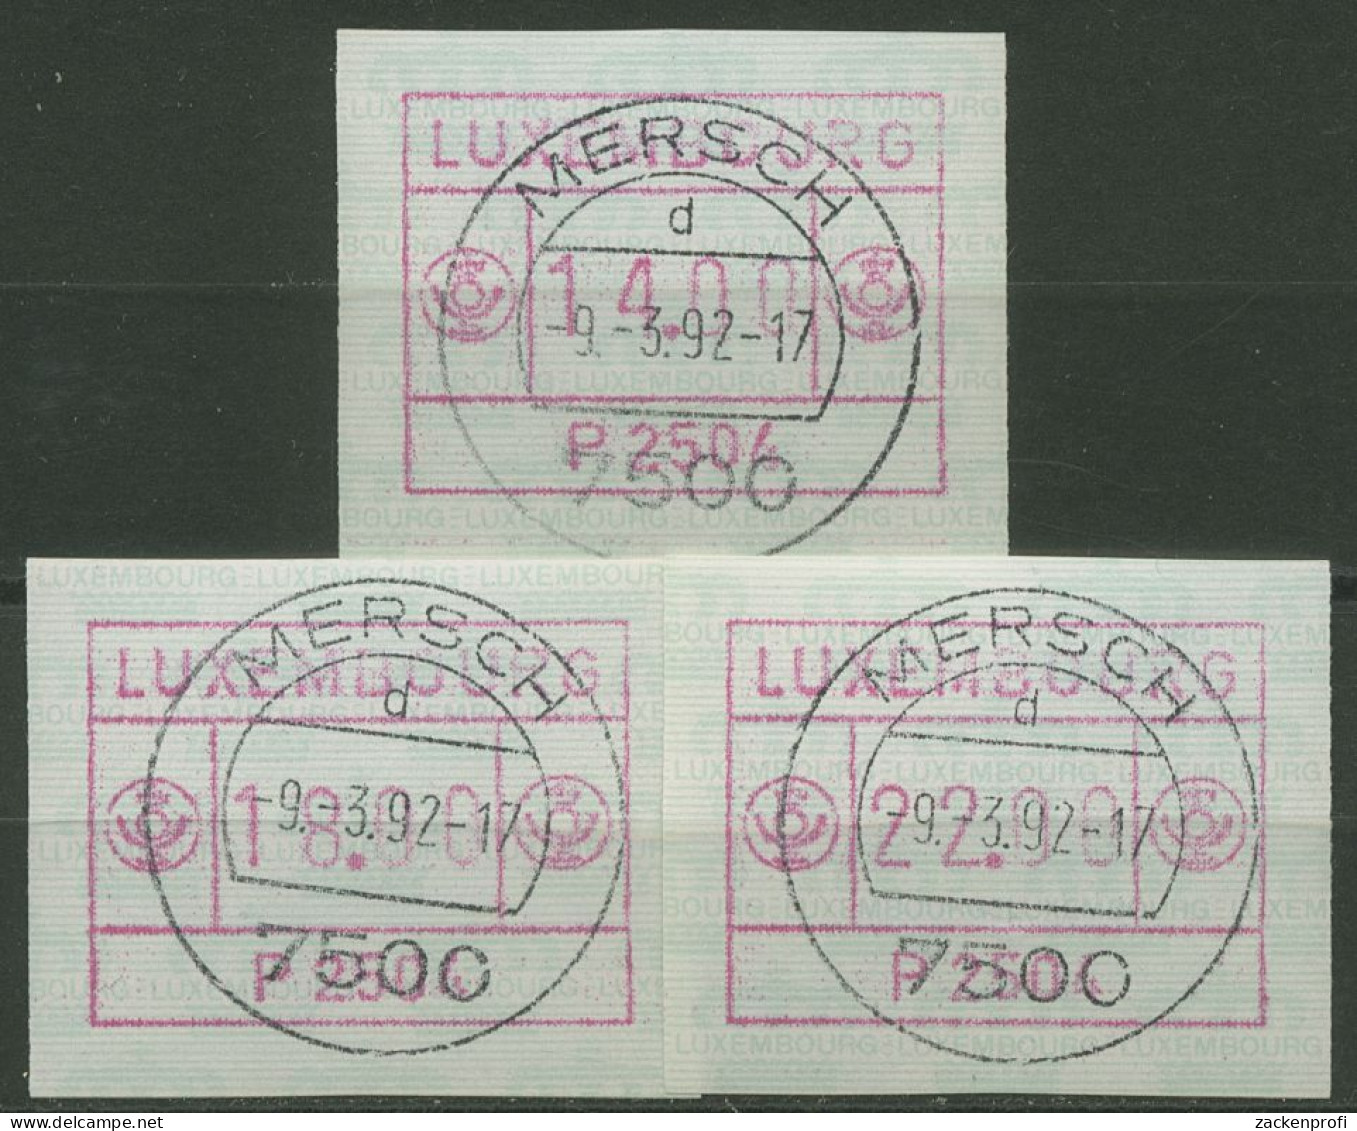 Luxemburg 1983 Automatenmarke Automat P 2504 Satz 1.4 D S4 Gestempelt - Postage Labels